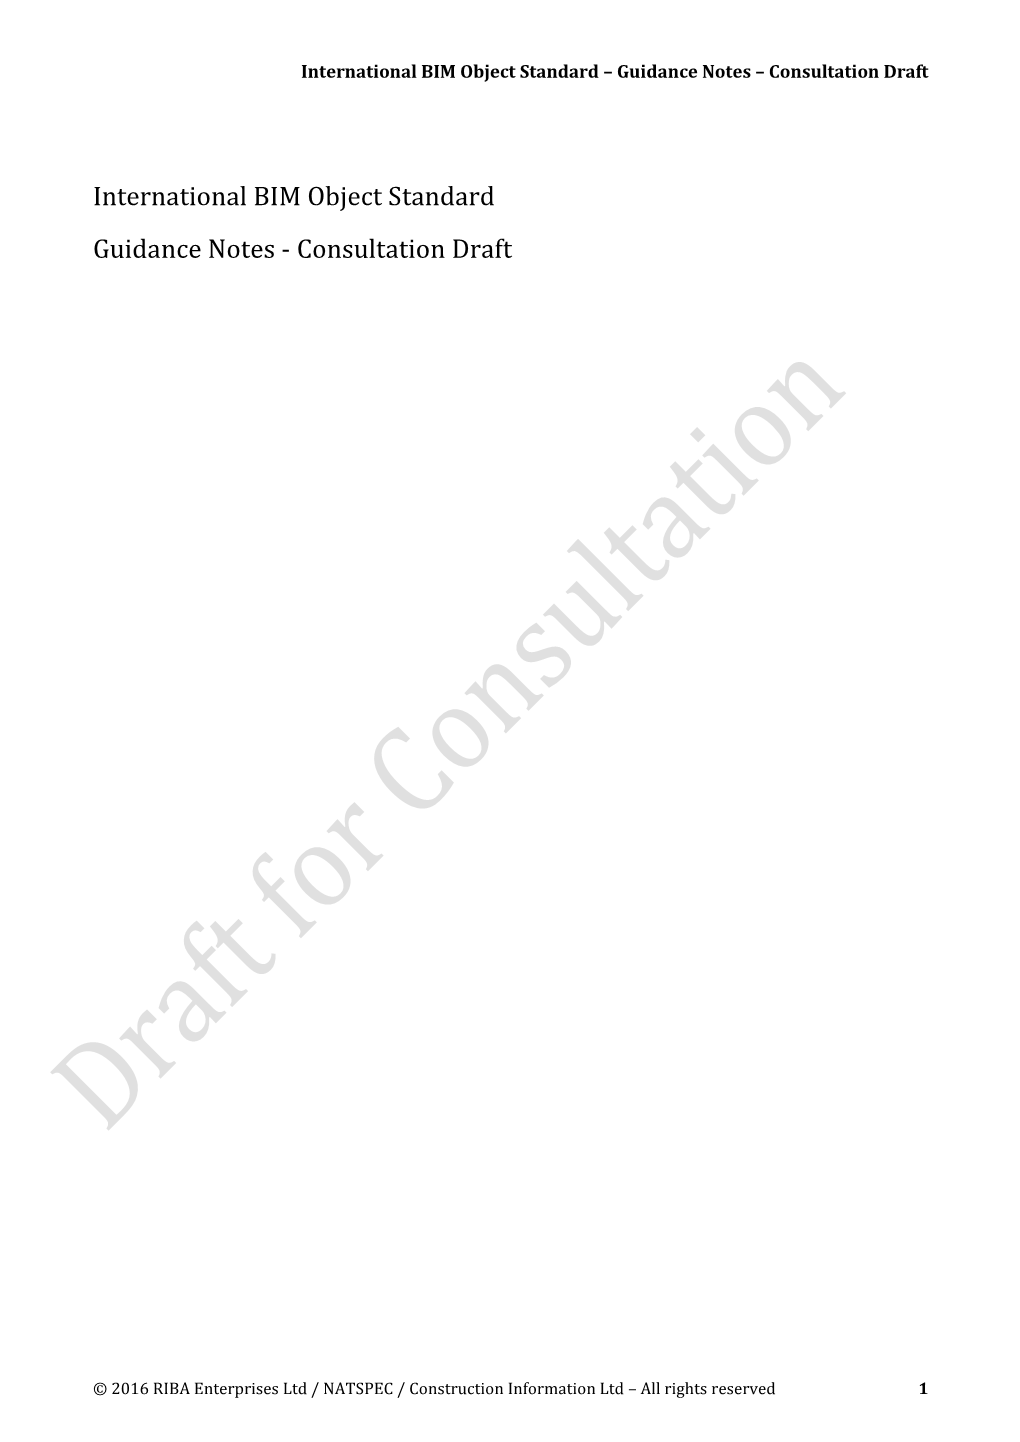 International BIM Object Standard Guidance Notes - Consultation Draft